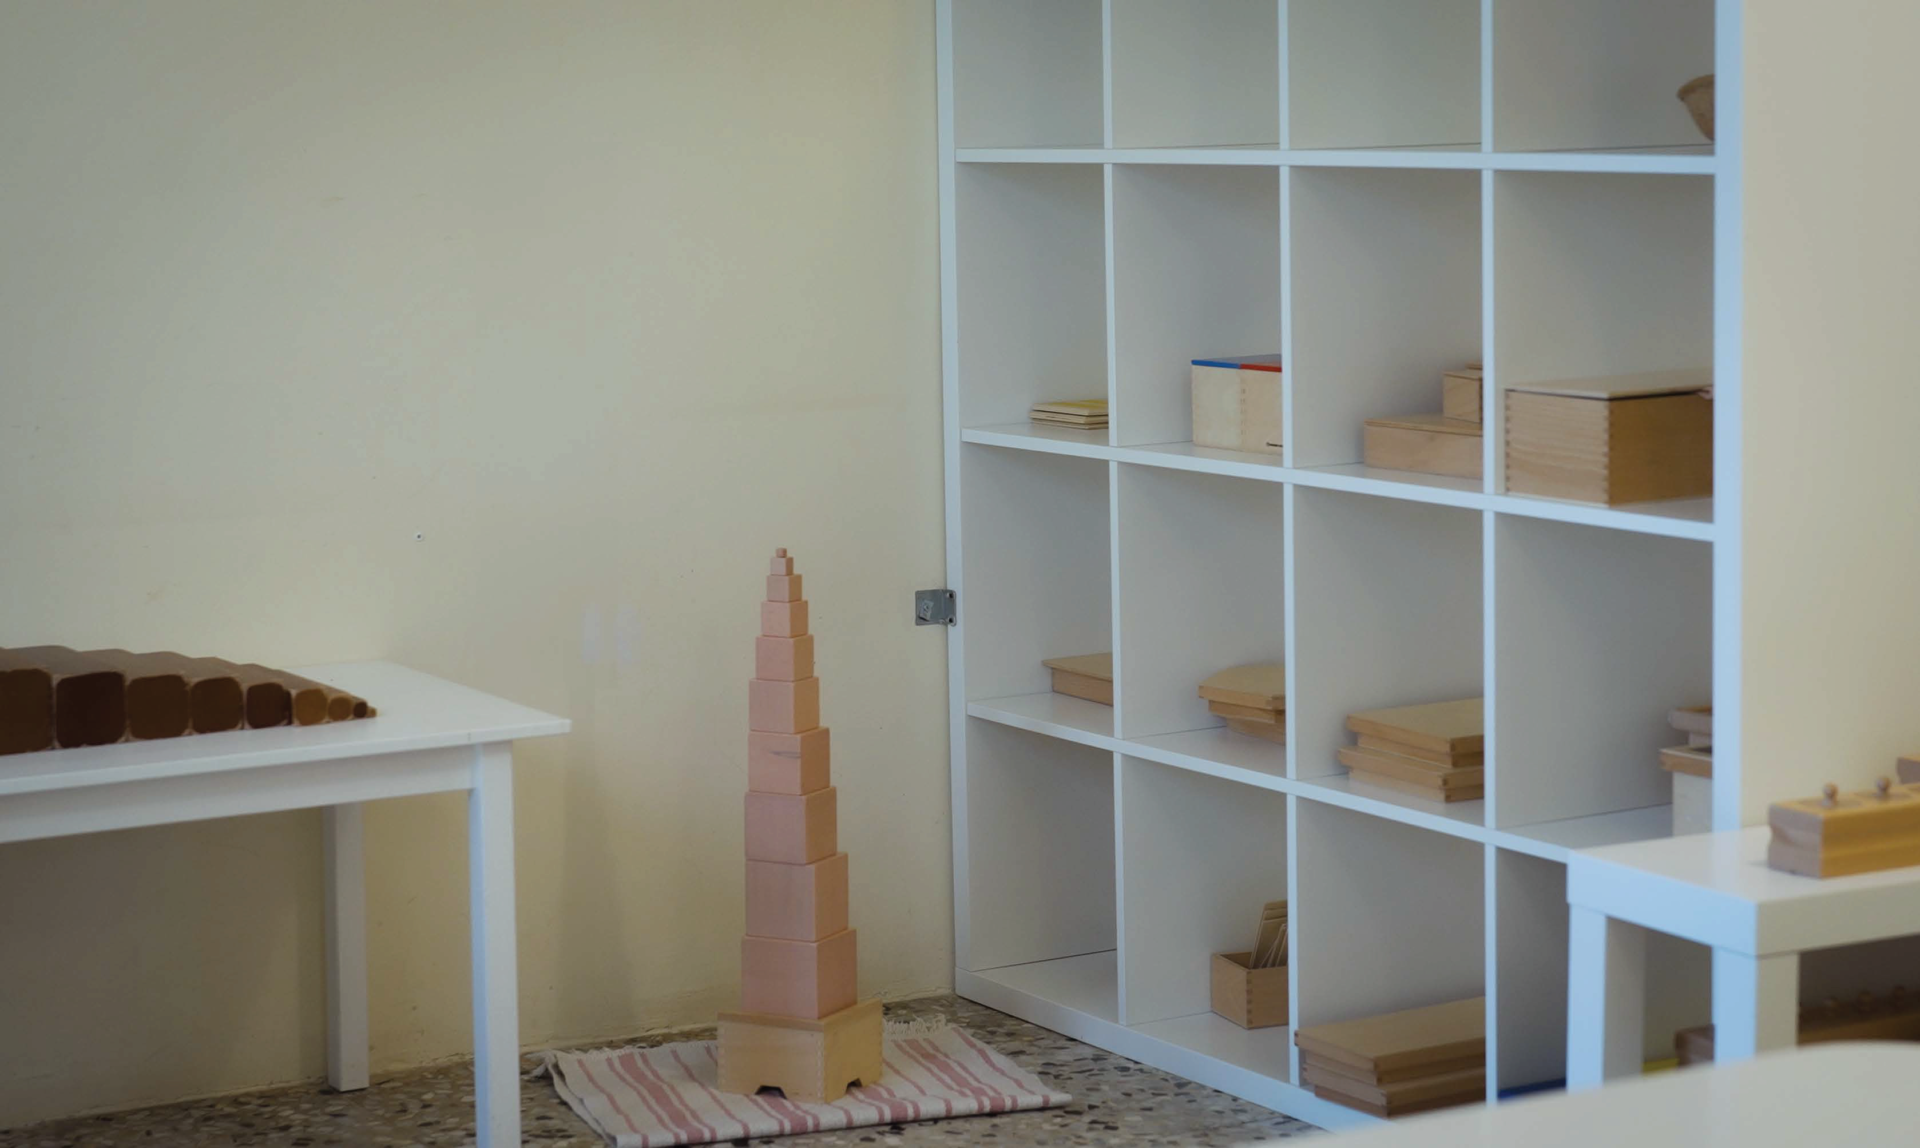 All’interno di un’aula, un mobile bianco in legno ospita i materiali del metodo Montessori, divisi in scomparti.